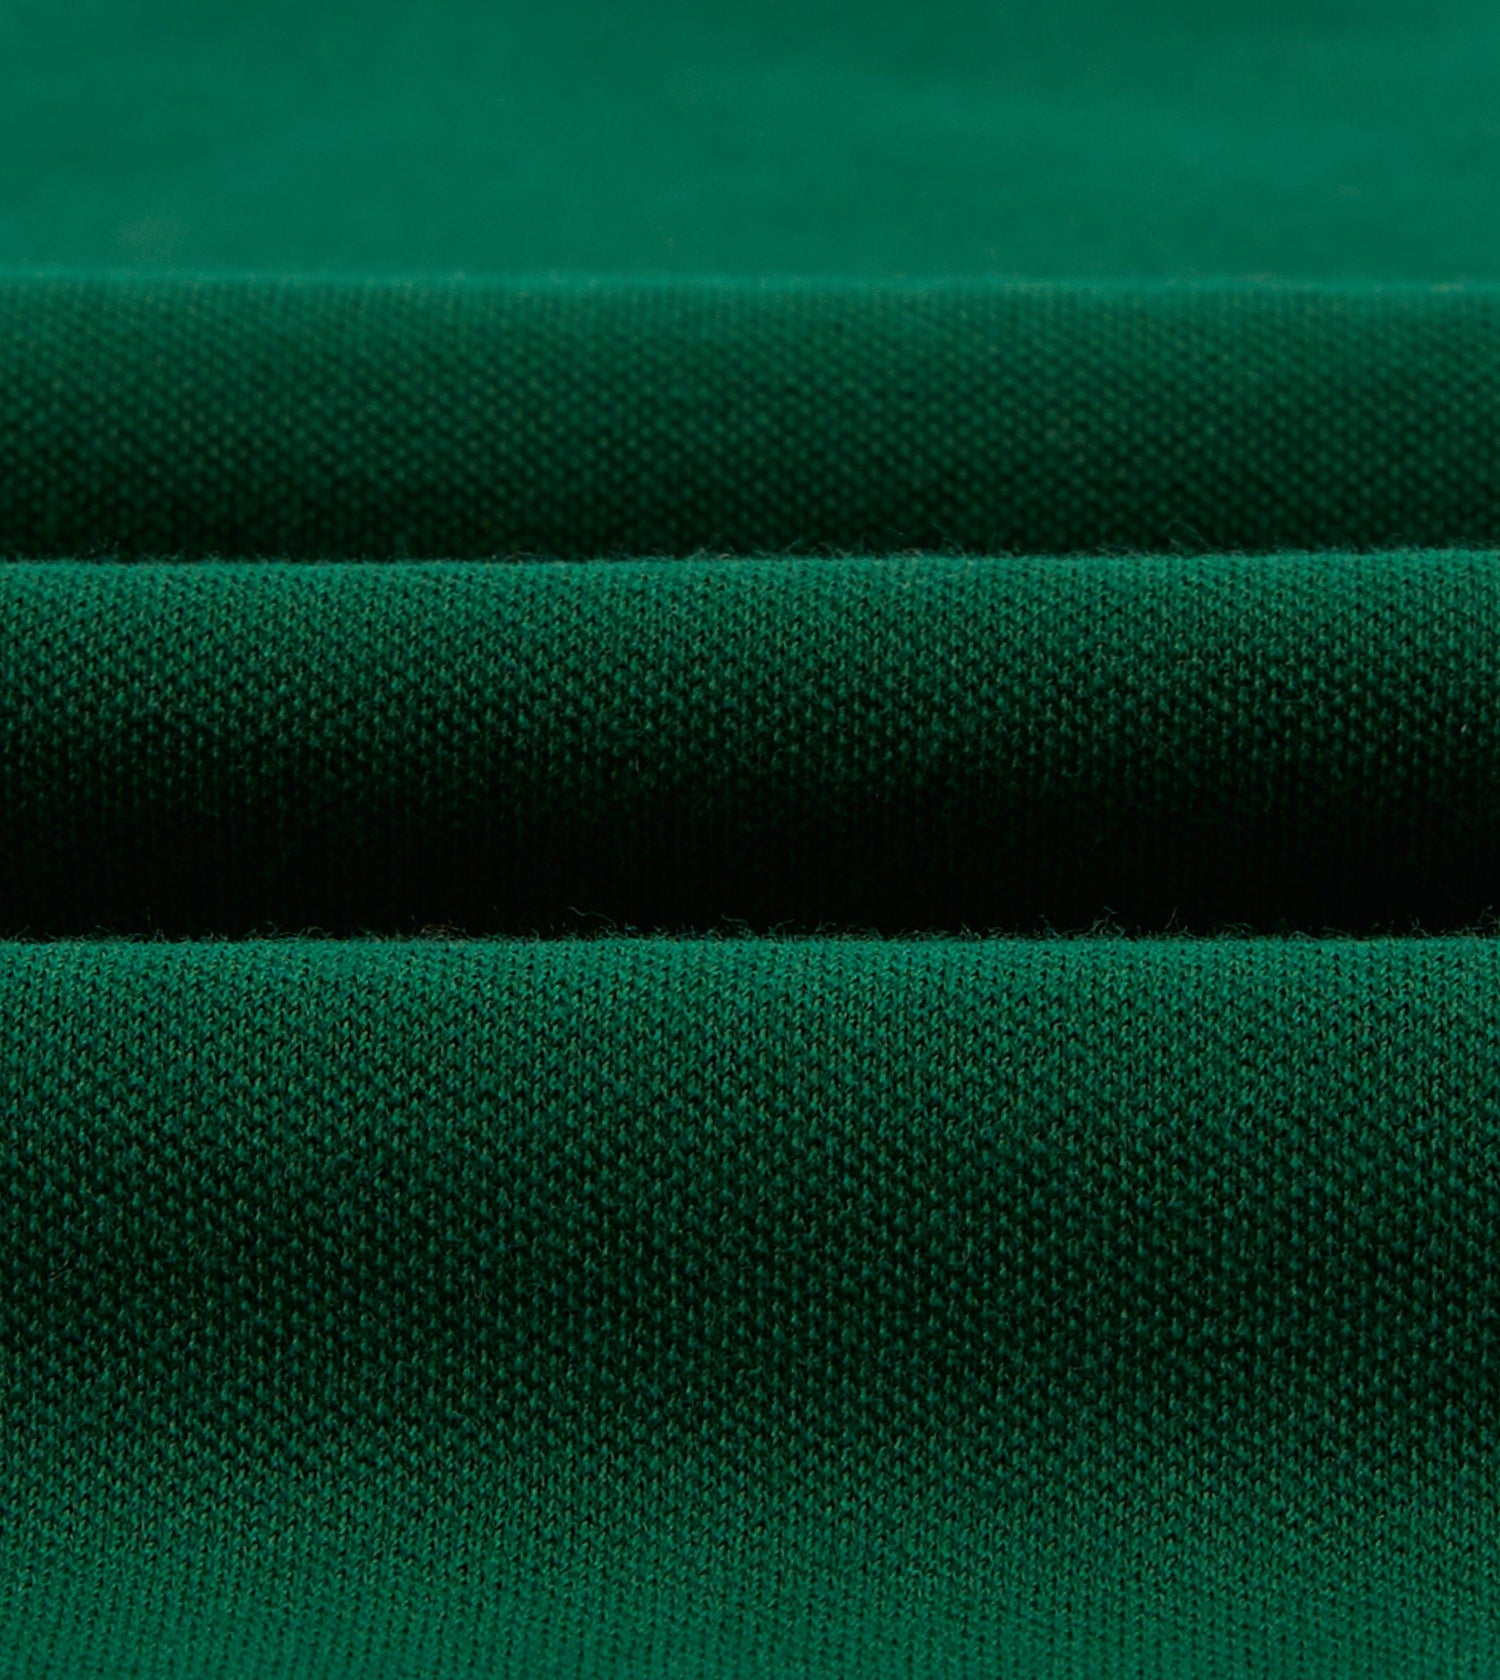 Green Piqué Cotton Polo Shirt